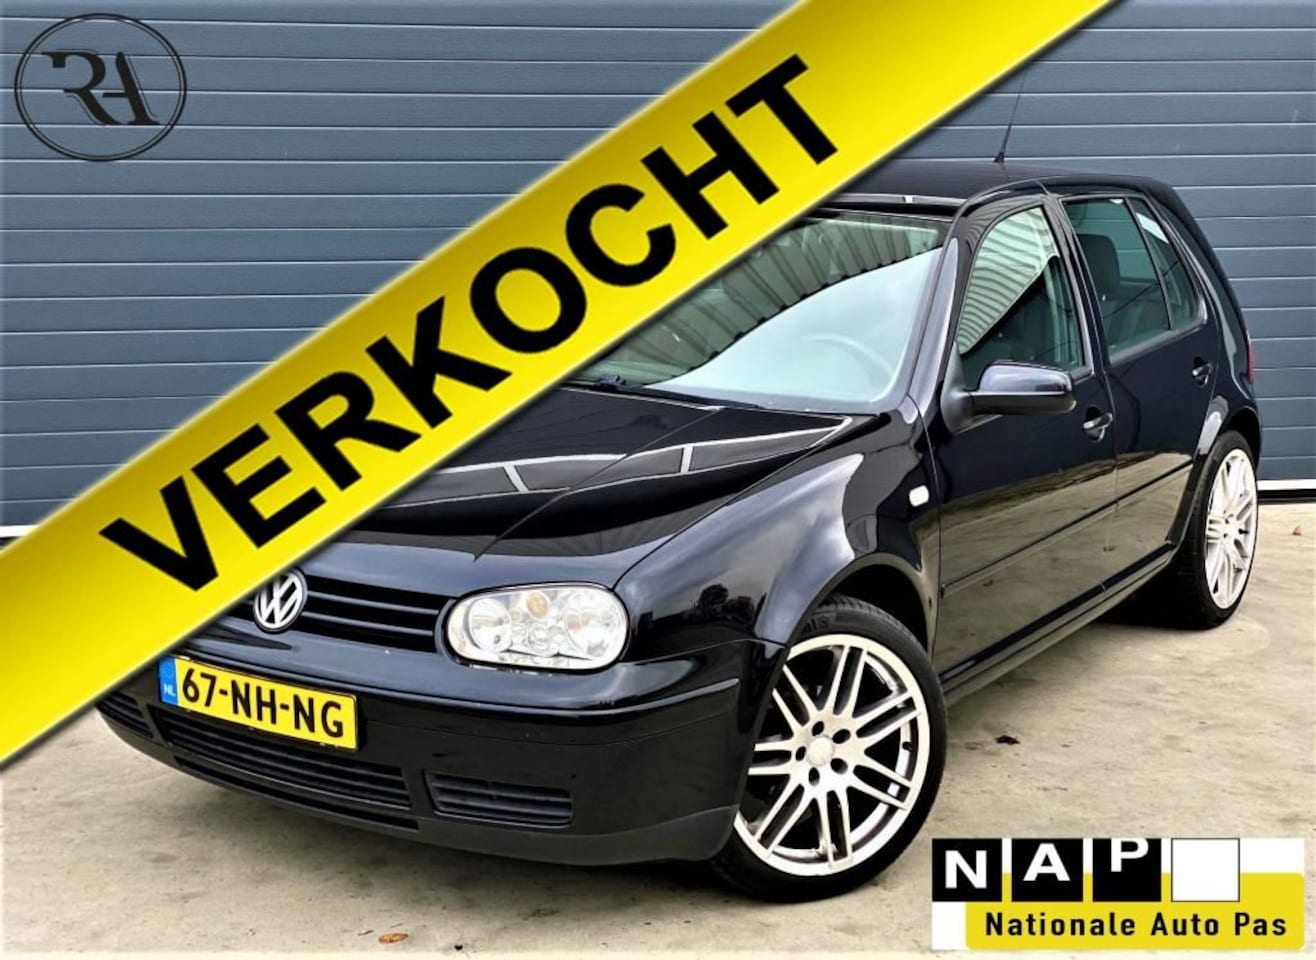 verloving Toepassing Respect Volkswagen Golf 1.6 16V Ocean 2003 Benzine - Occasion te koop op  AutoWereld.nl